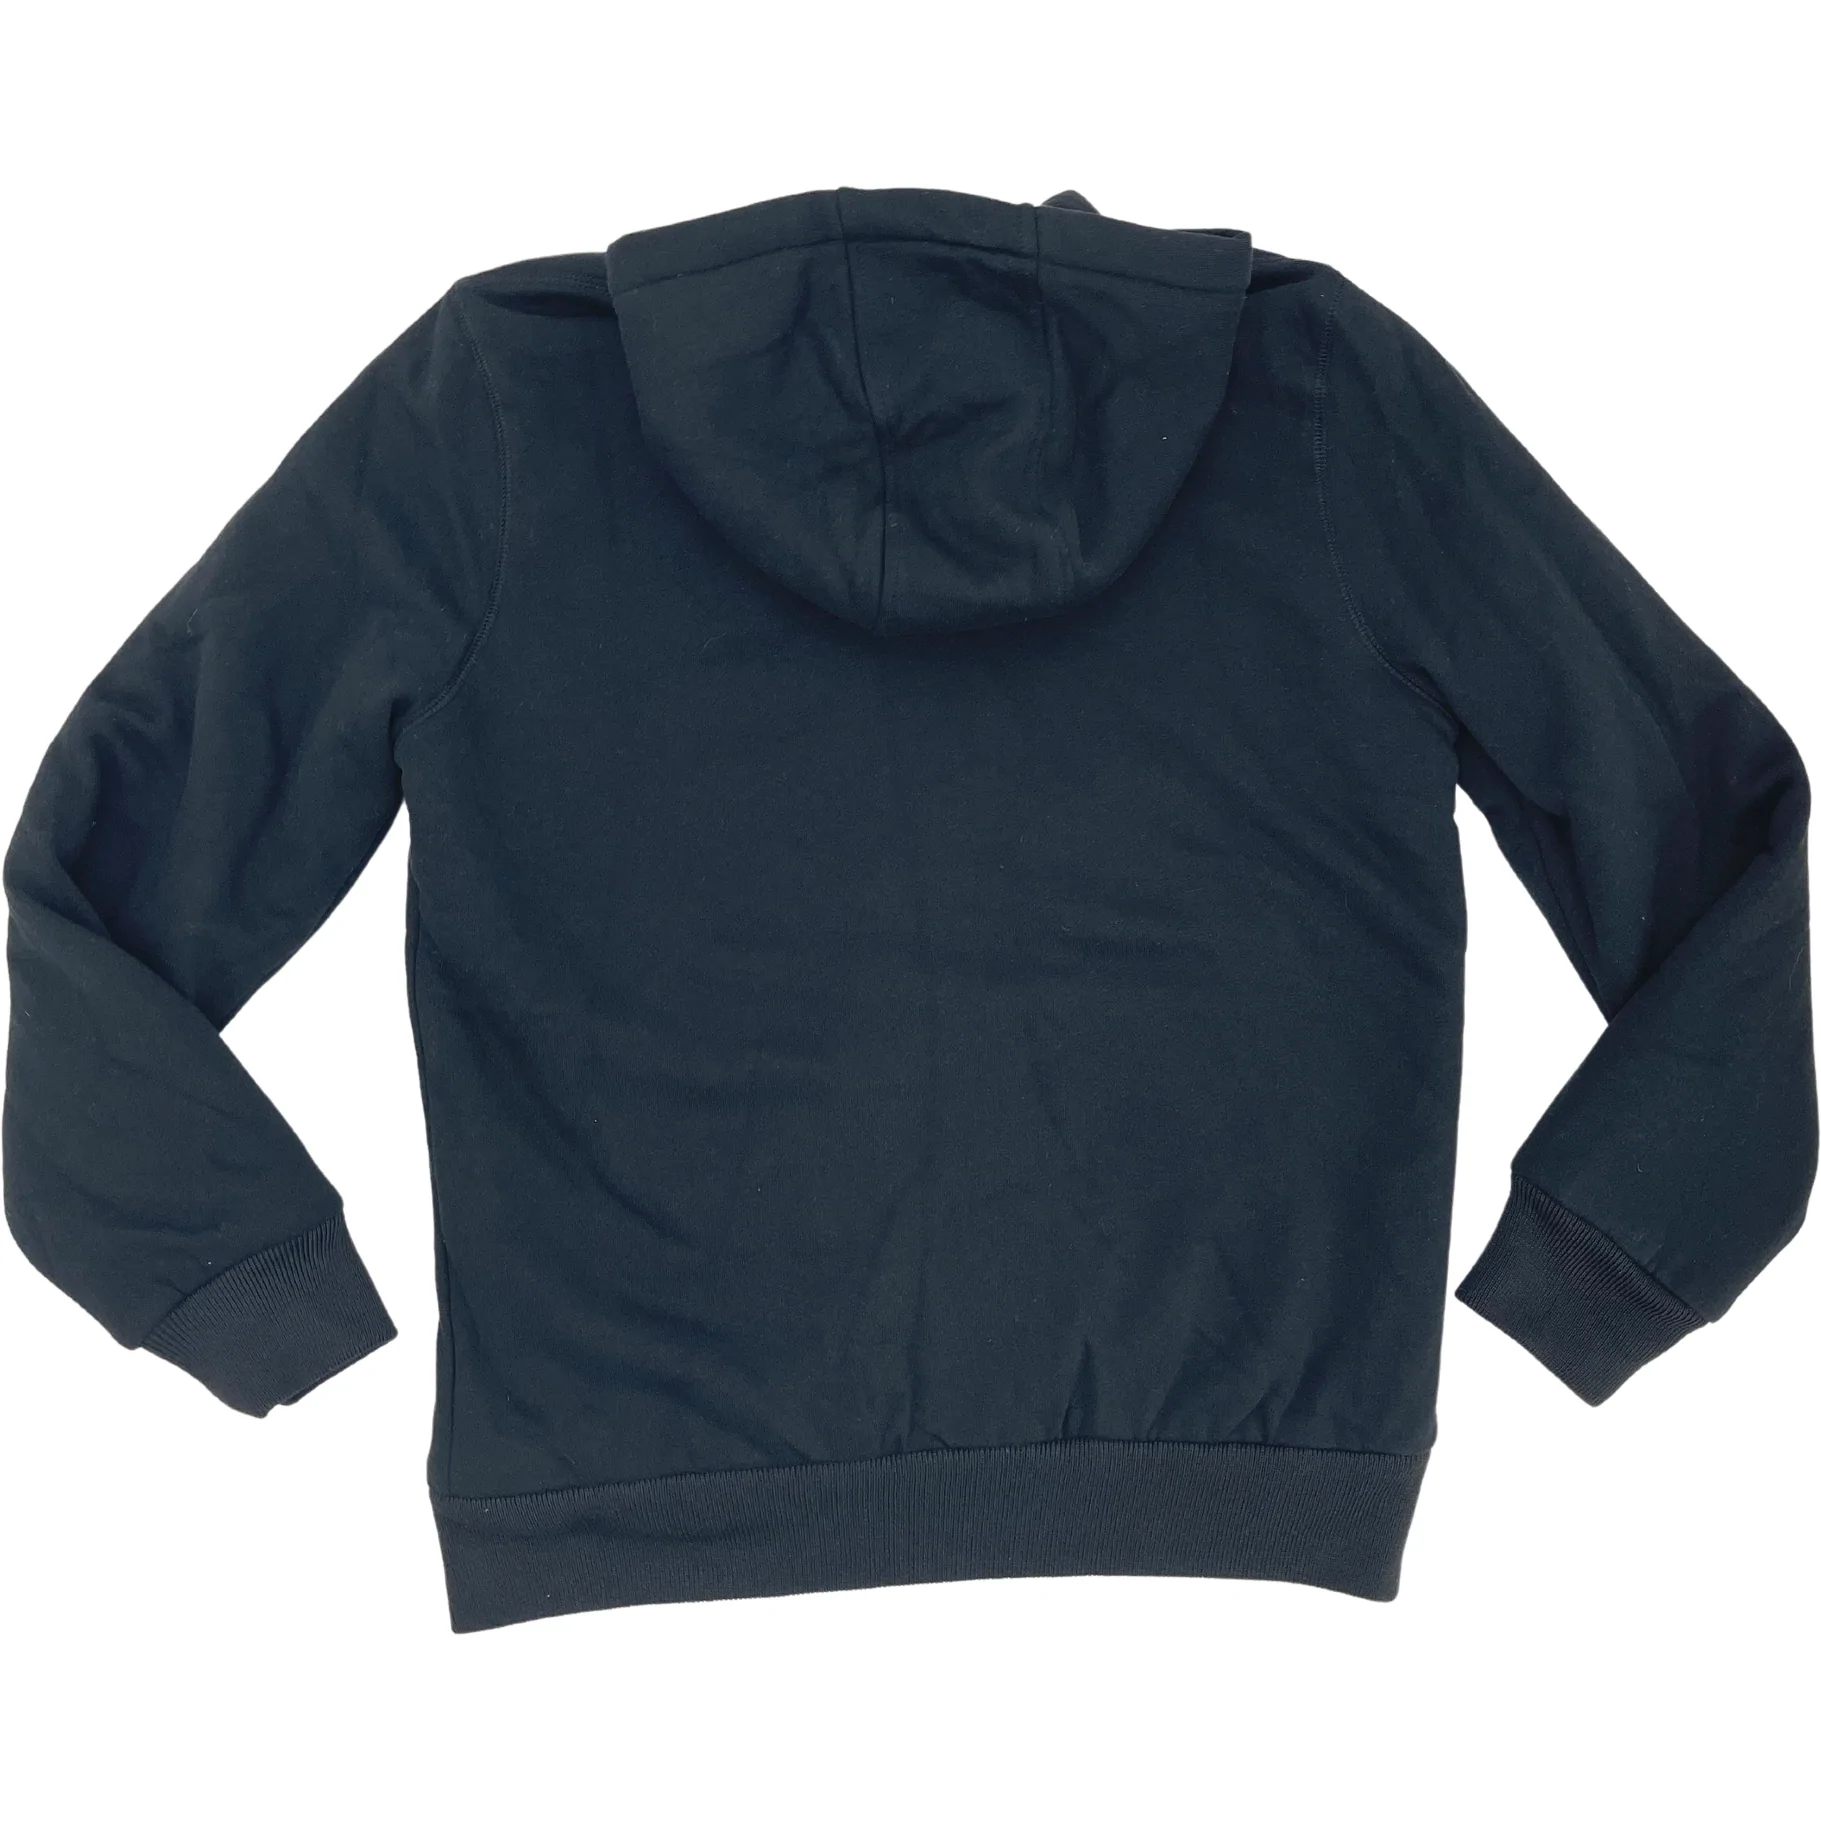 Buffalo David Bitton Men's Sherpa Knit Jacket / Zip Up Sweater / Black / Size Large